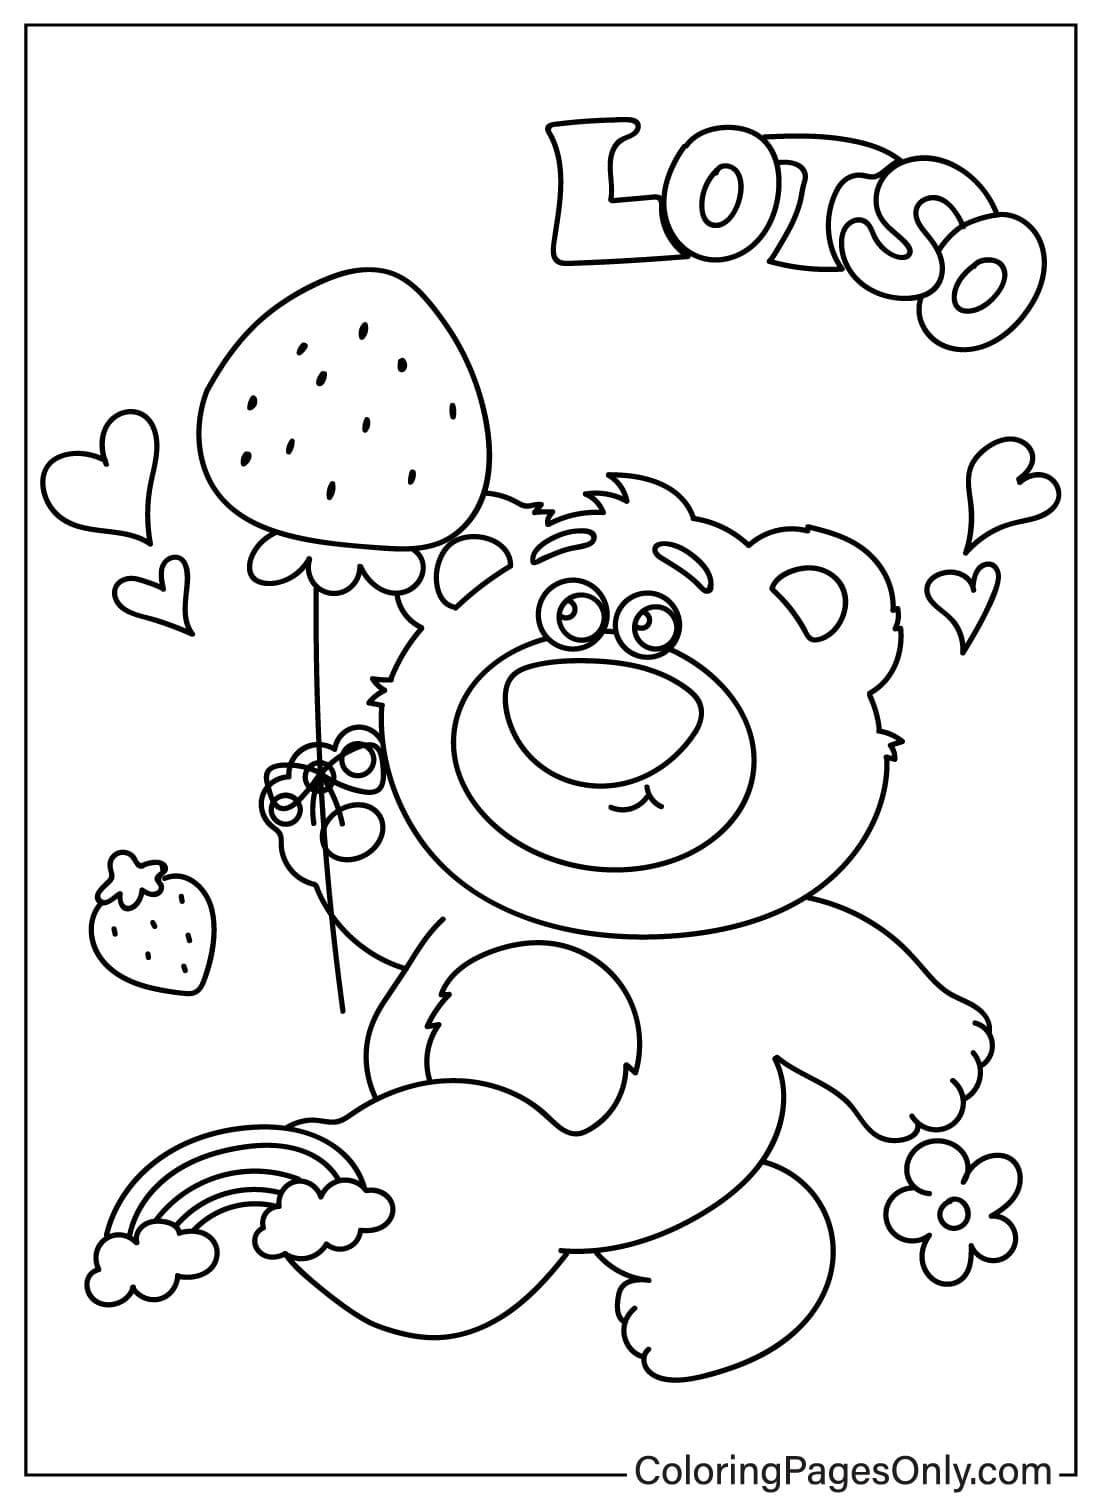 Página para colorir do Urso Lotso para impressão do Urso Lotso